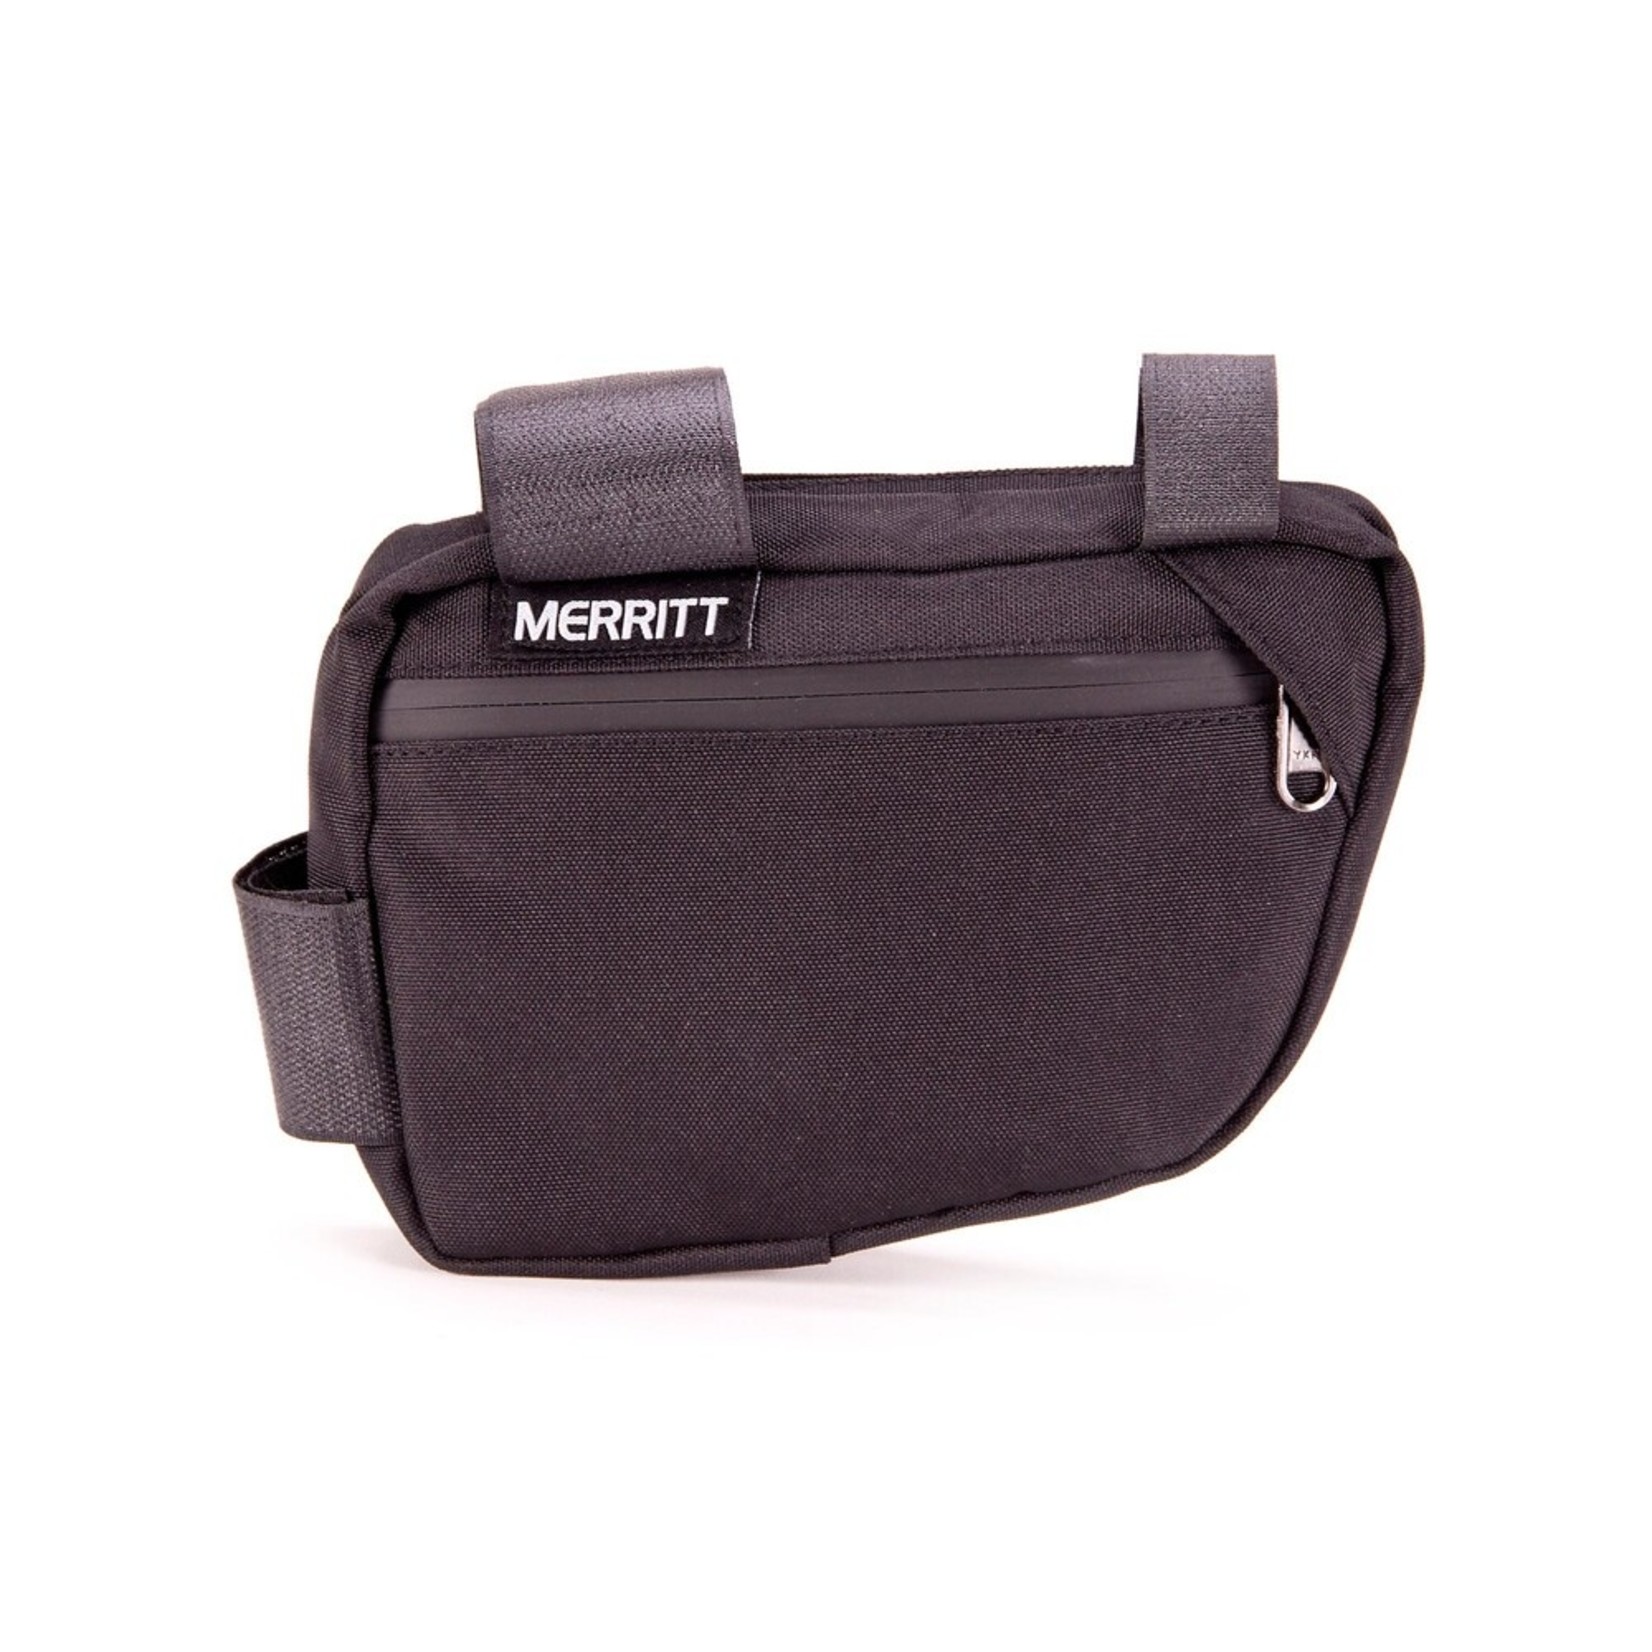 Merritt Merritt Corner Pocket Frame Bag,